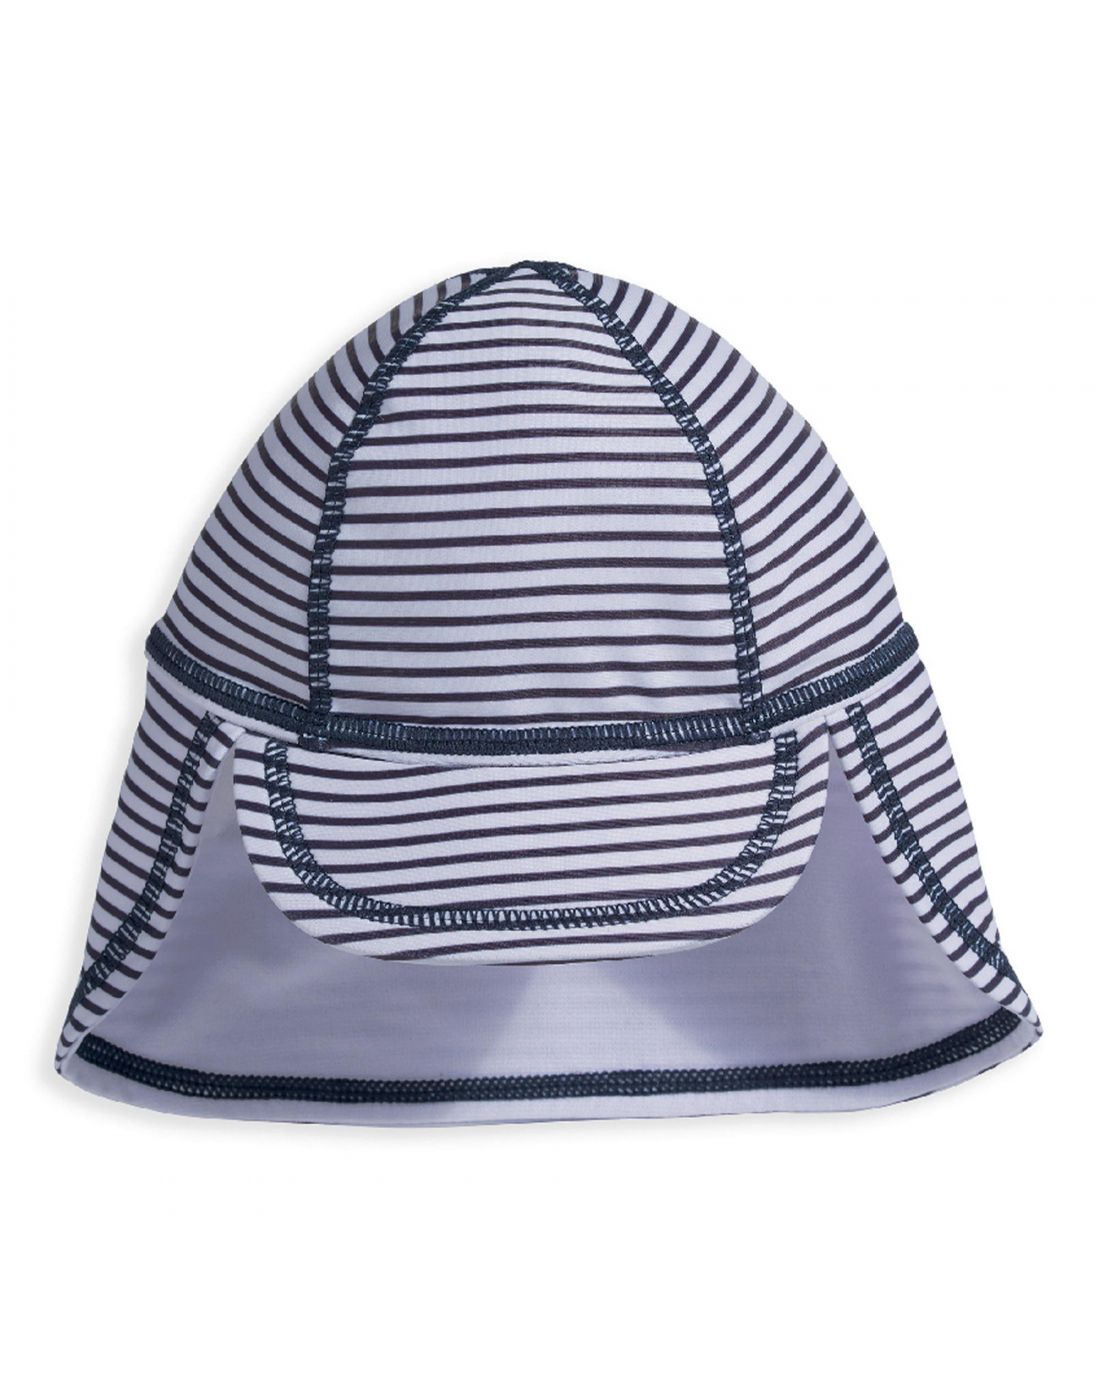 Βρεφικό Καπέλο ANTI-UV Mamas & Papas